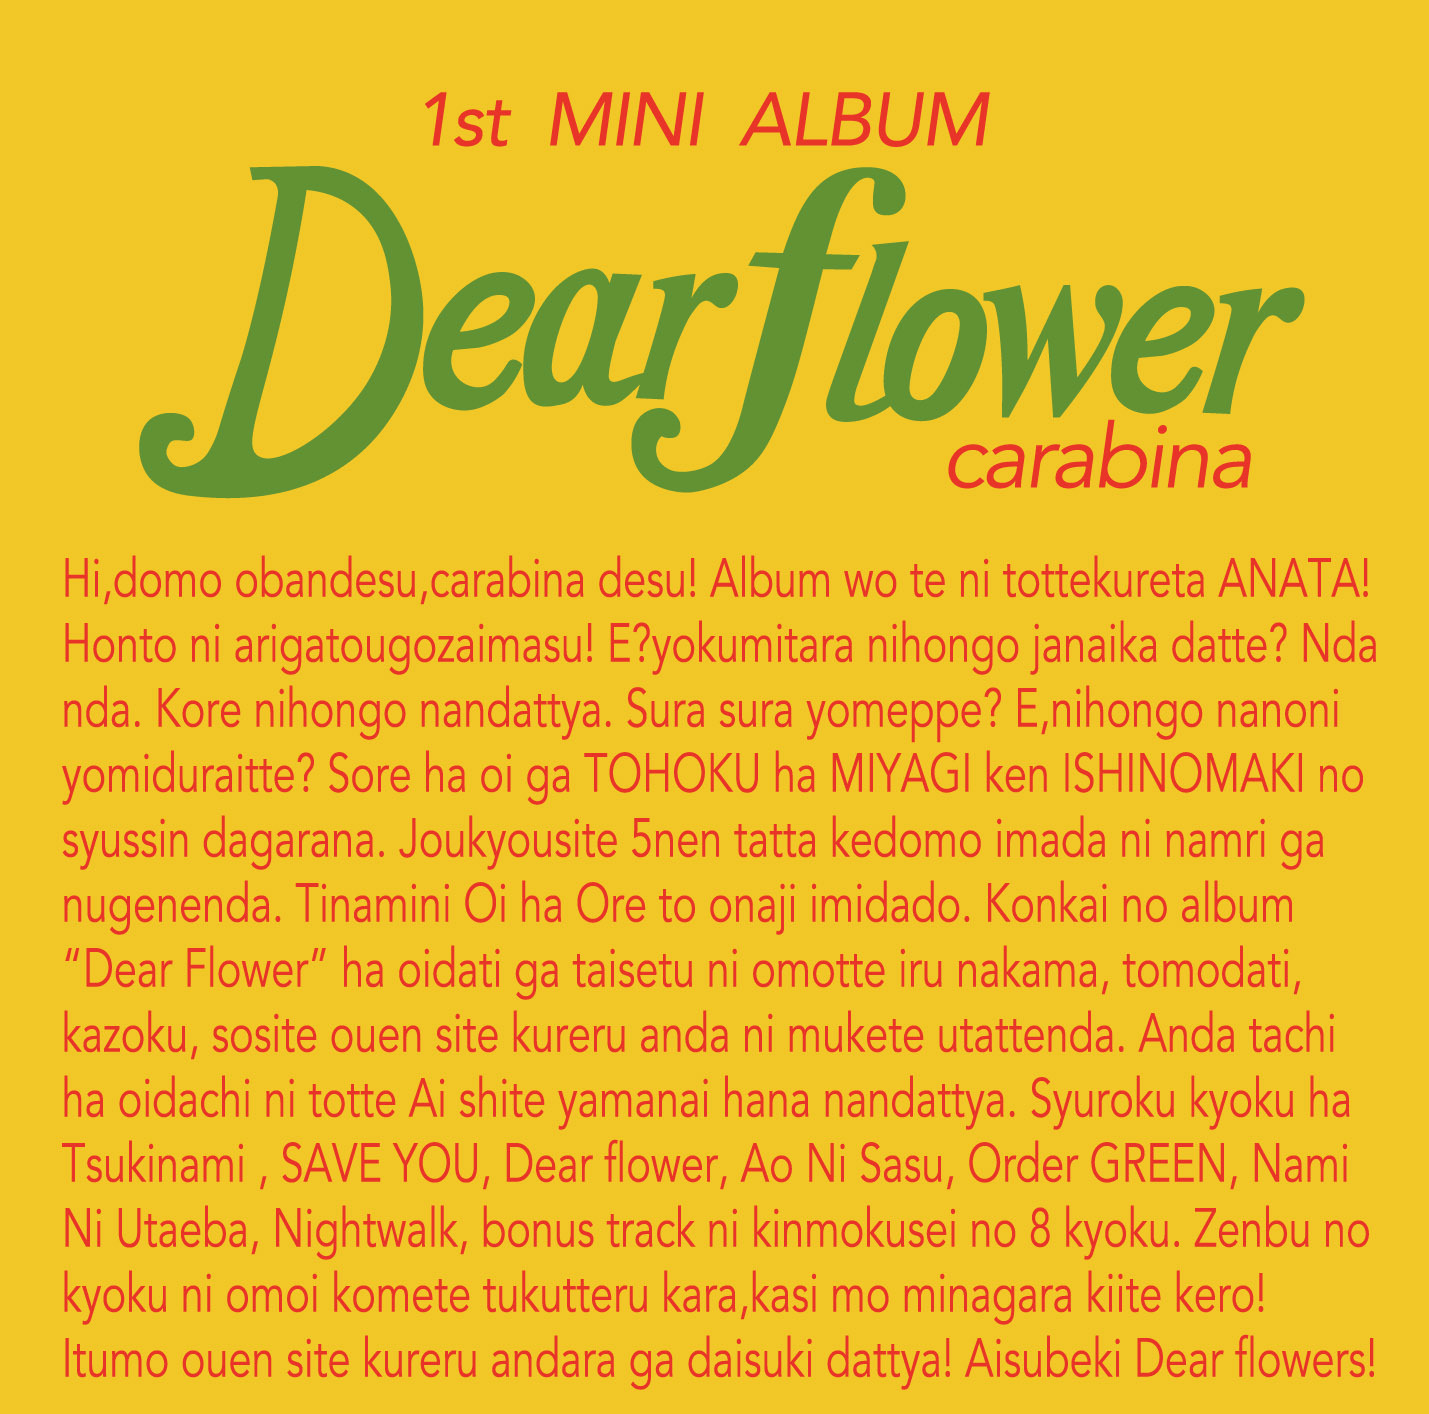 Dear flower